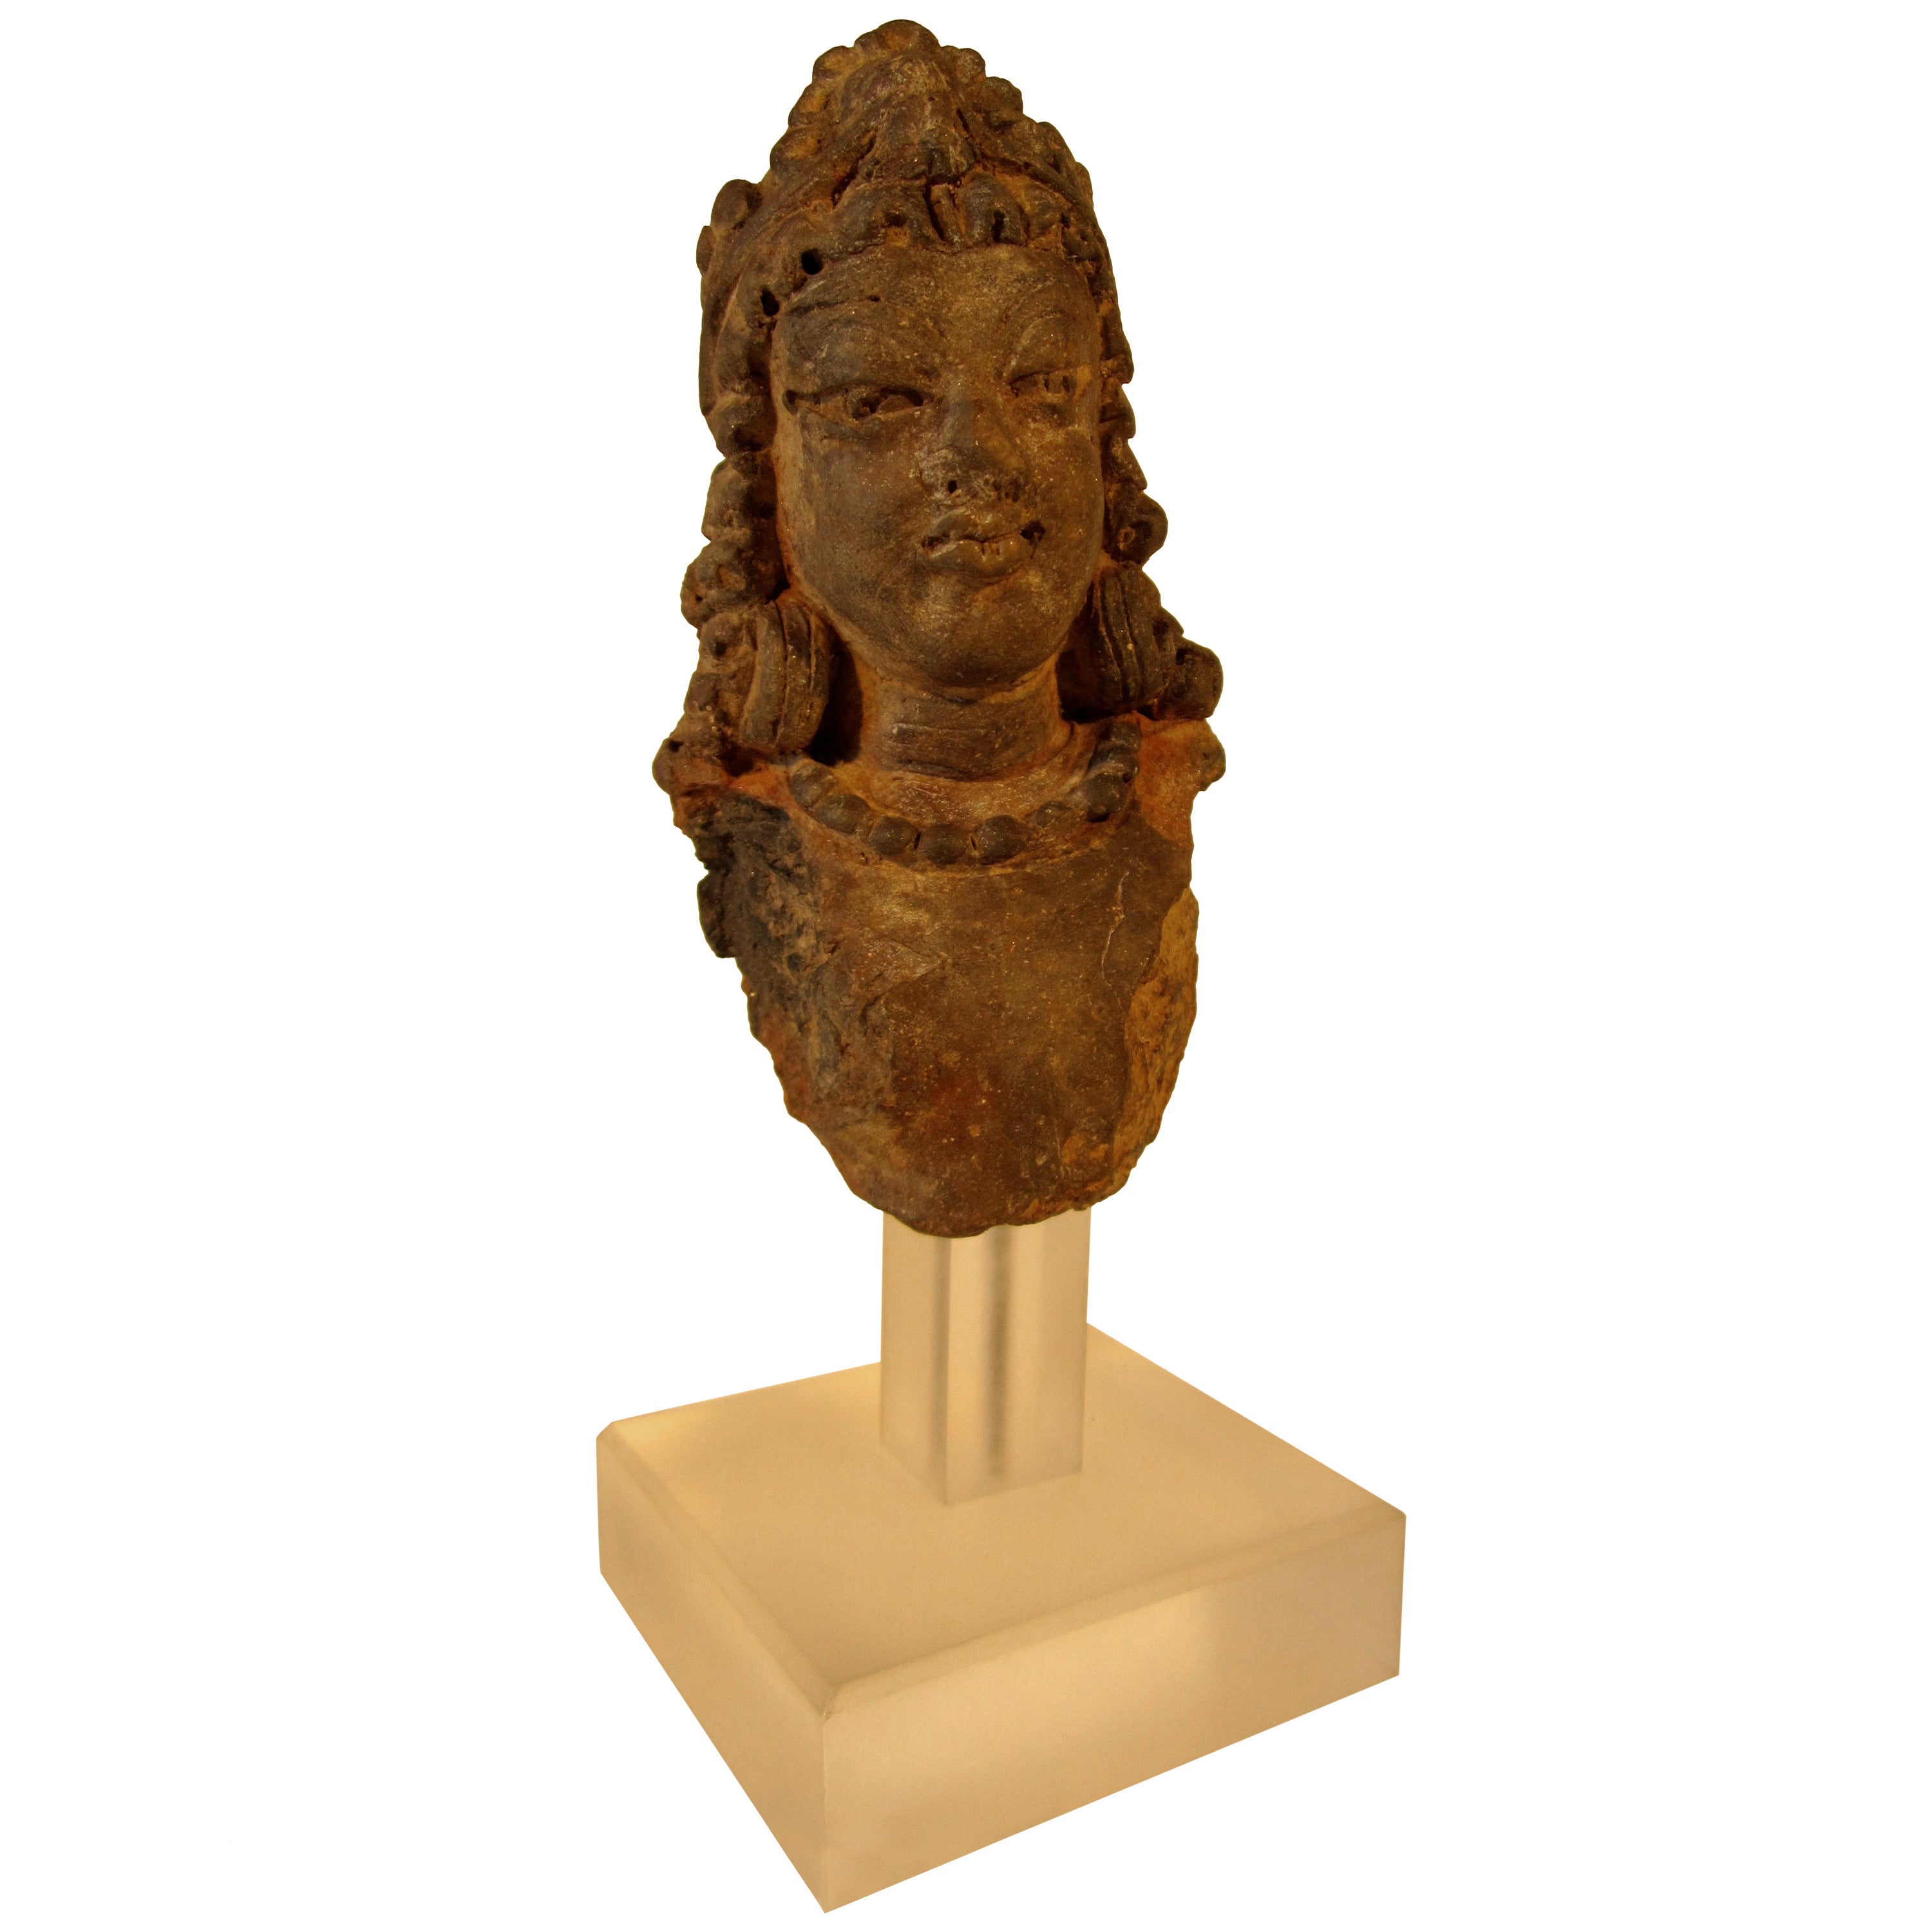 Indian Terracotta Male Deity Head